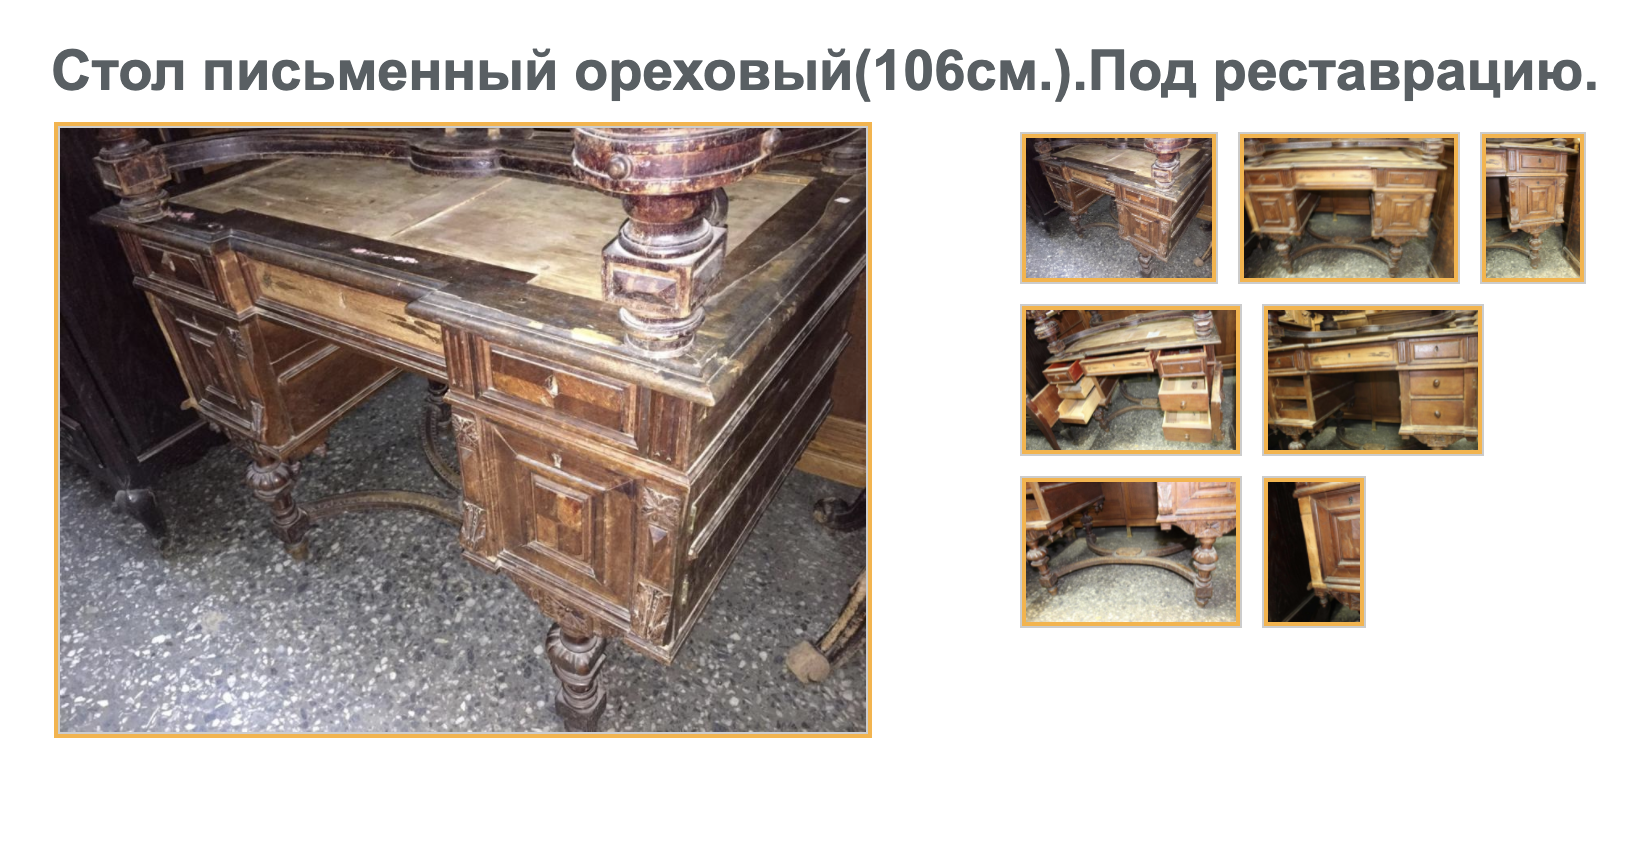 А вот похожий стол в более плачевном состоянии. Но это все равно антиквариат. Его продают за 35 000 ₽. Источник: bufetoff.ru